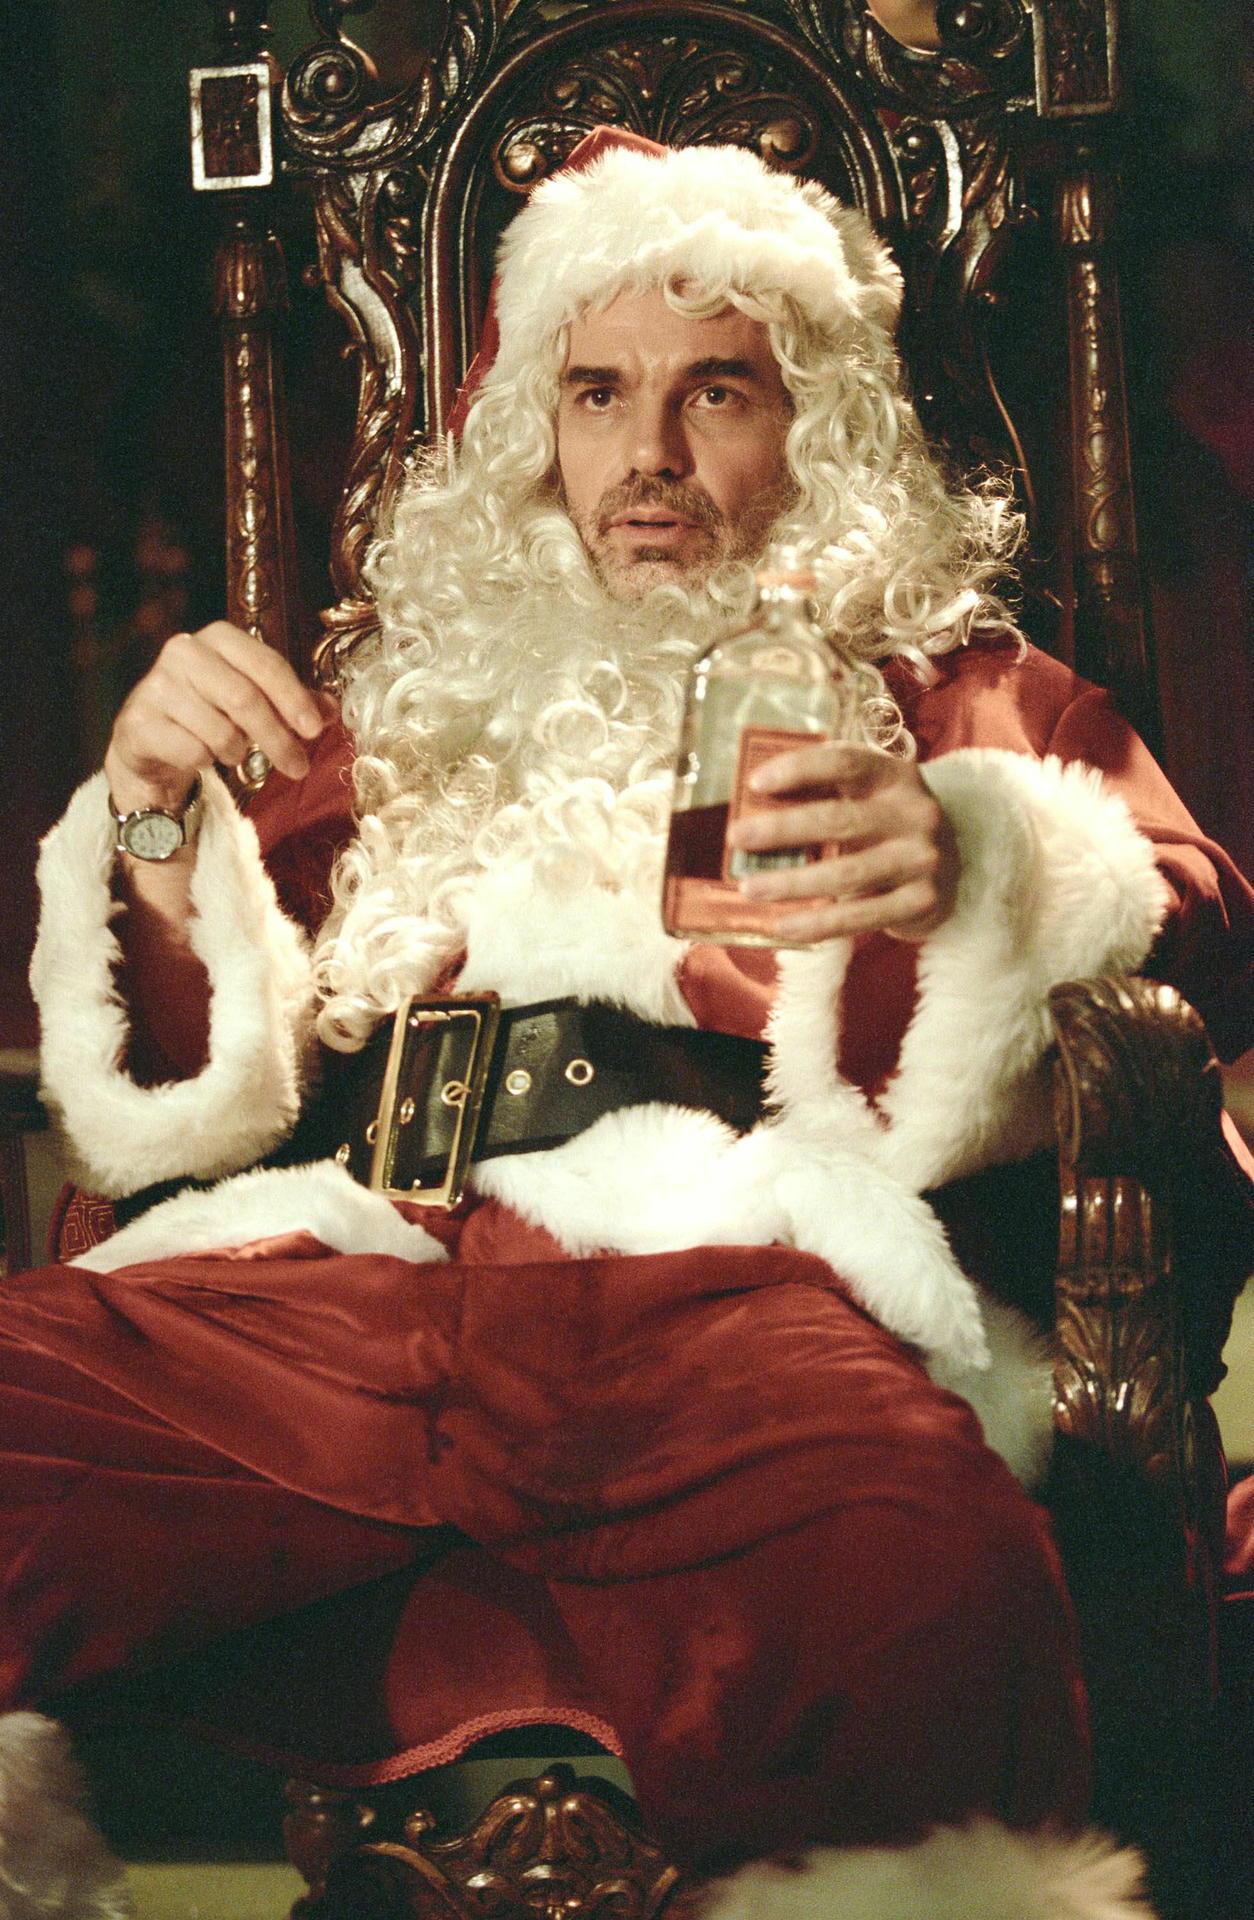 Billy Bob Thornton - Santa je úchyl!